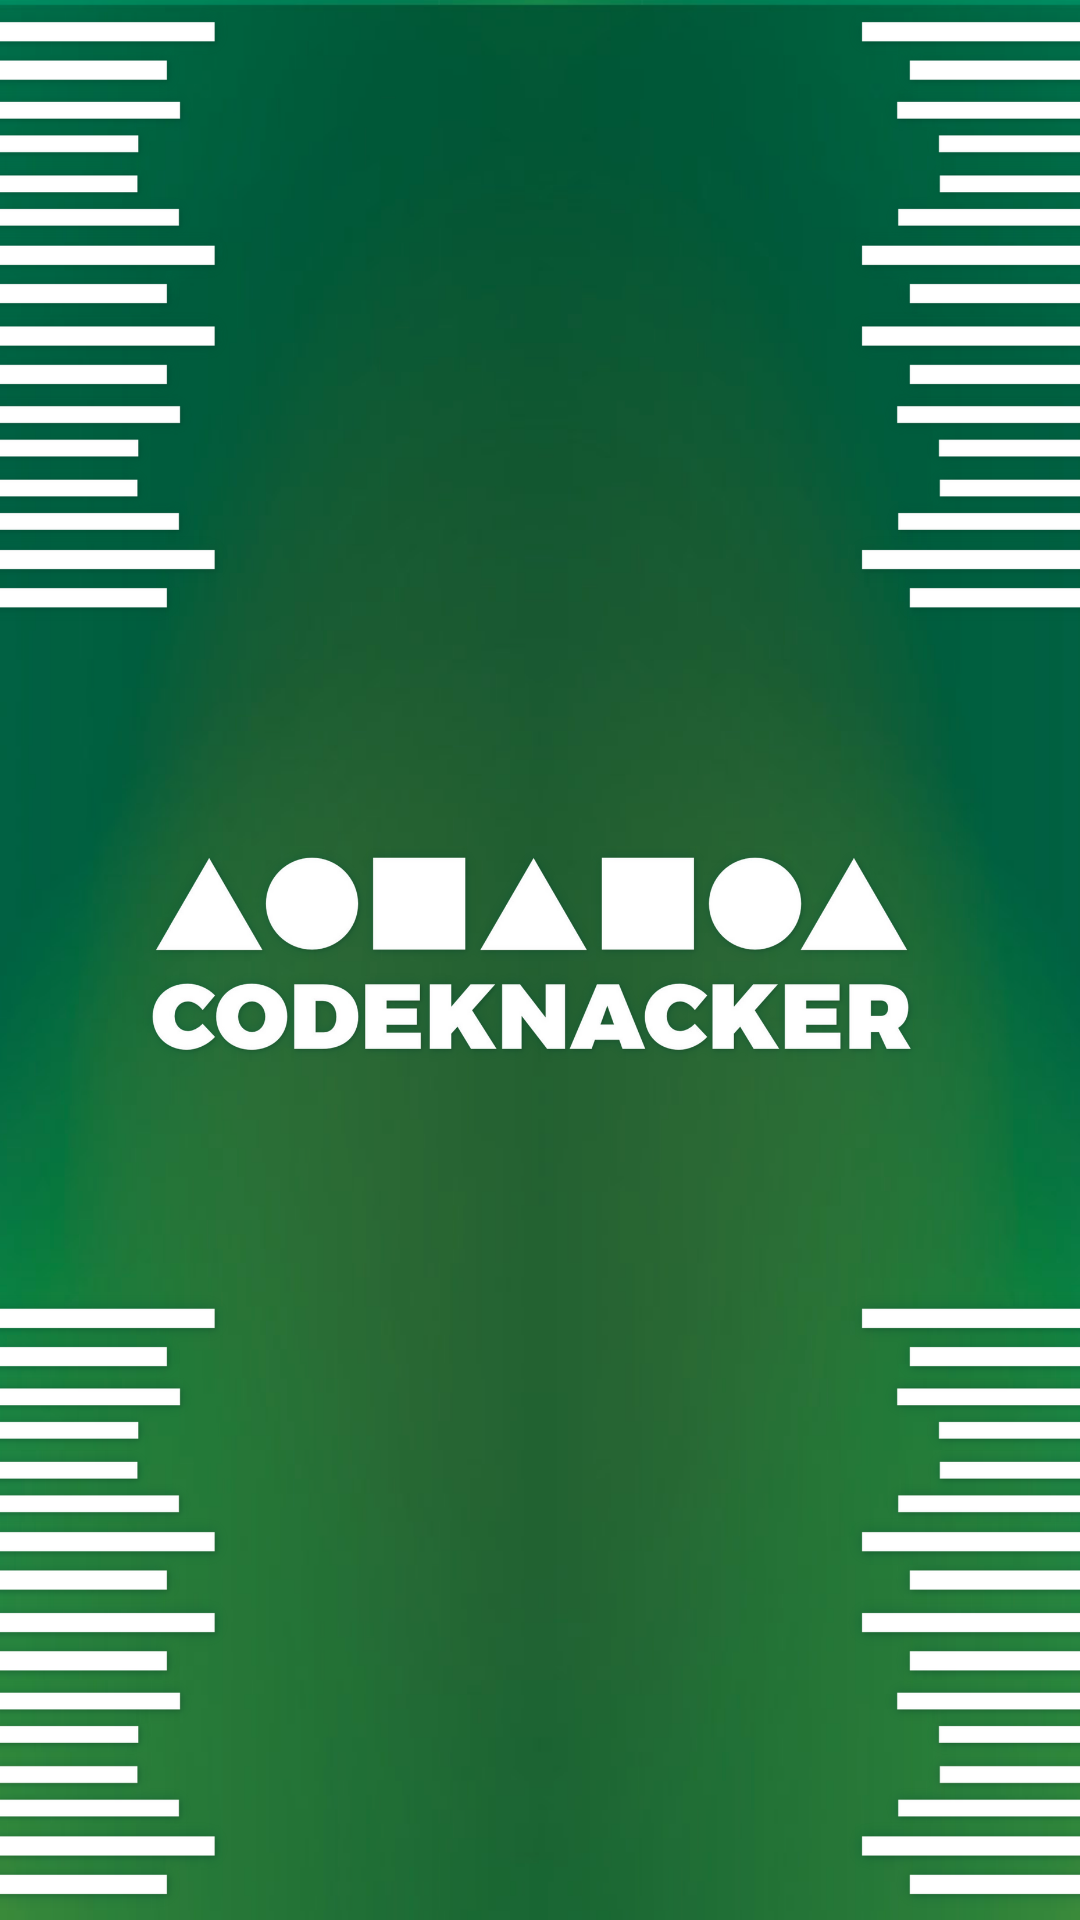 Codeknacker